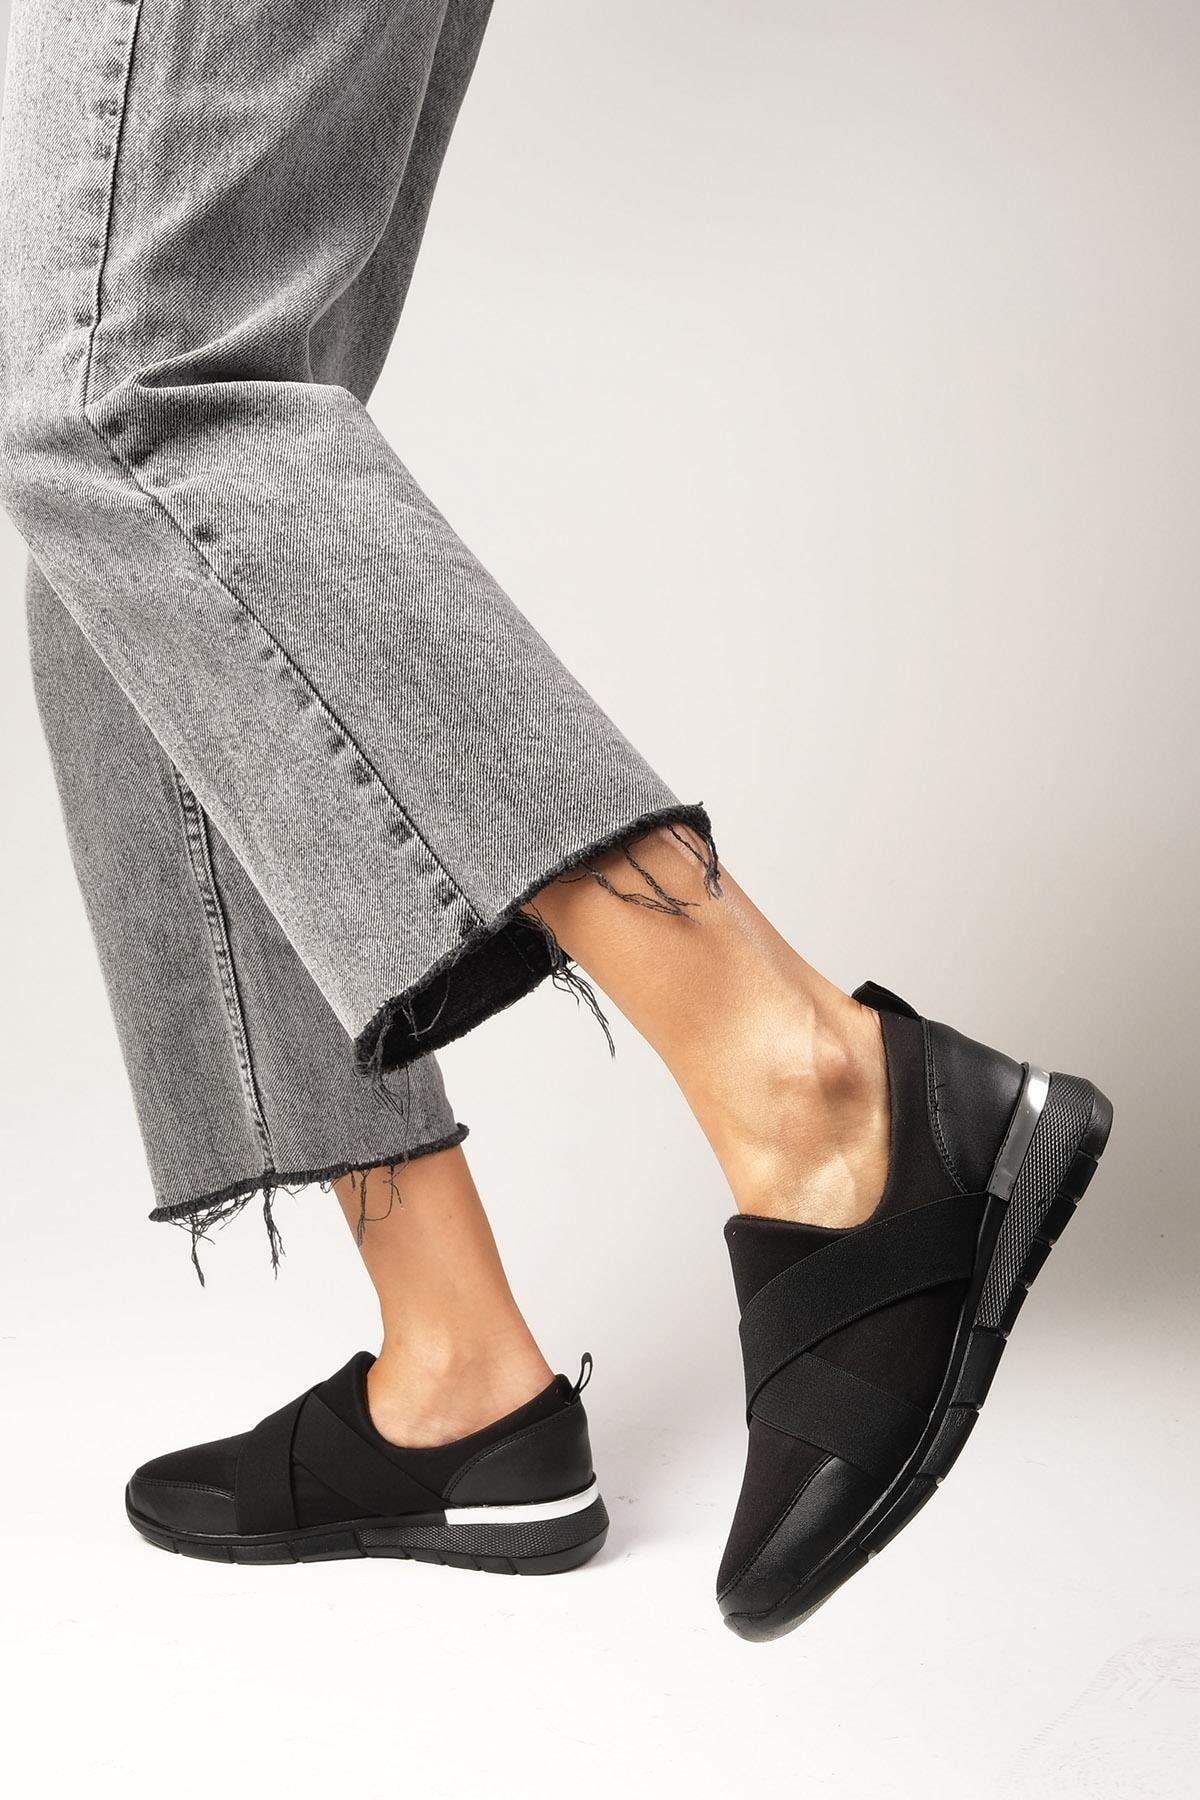 Mio Gusto Leni Siyah Renk Likra Kumaş Streç Kadın Günlük Rahat Spor Sneaker Ayakkabı, Anne Ayakkabıs